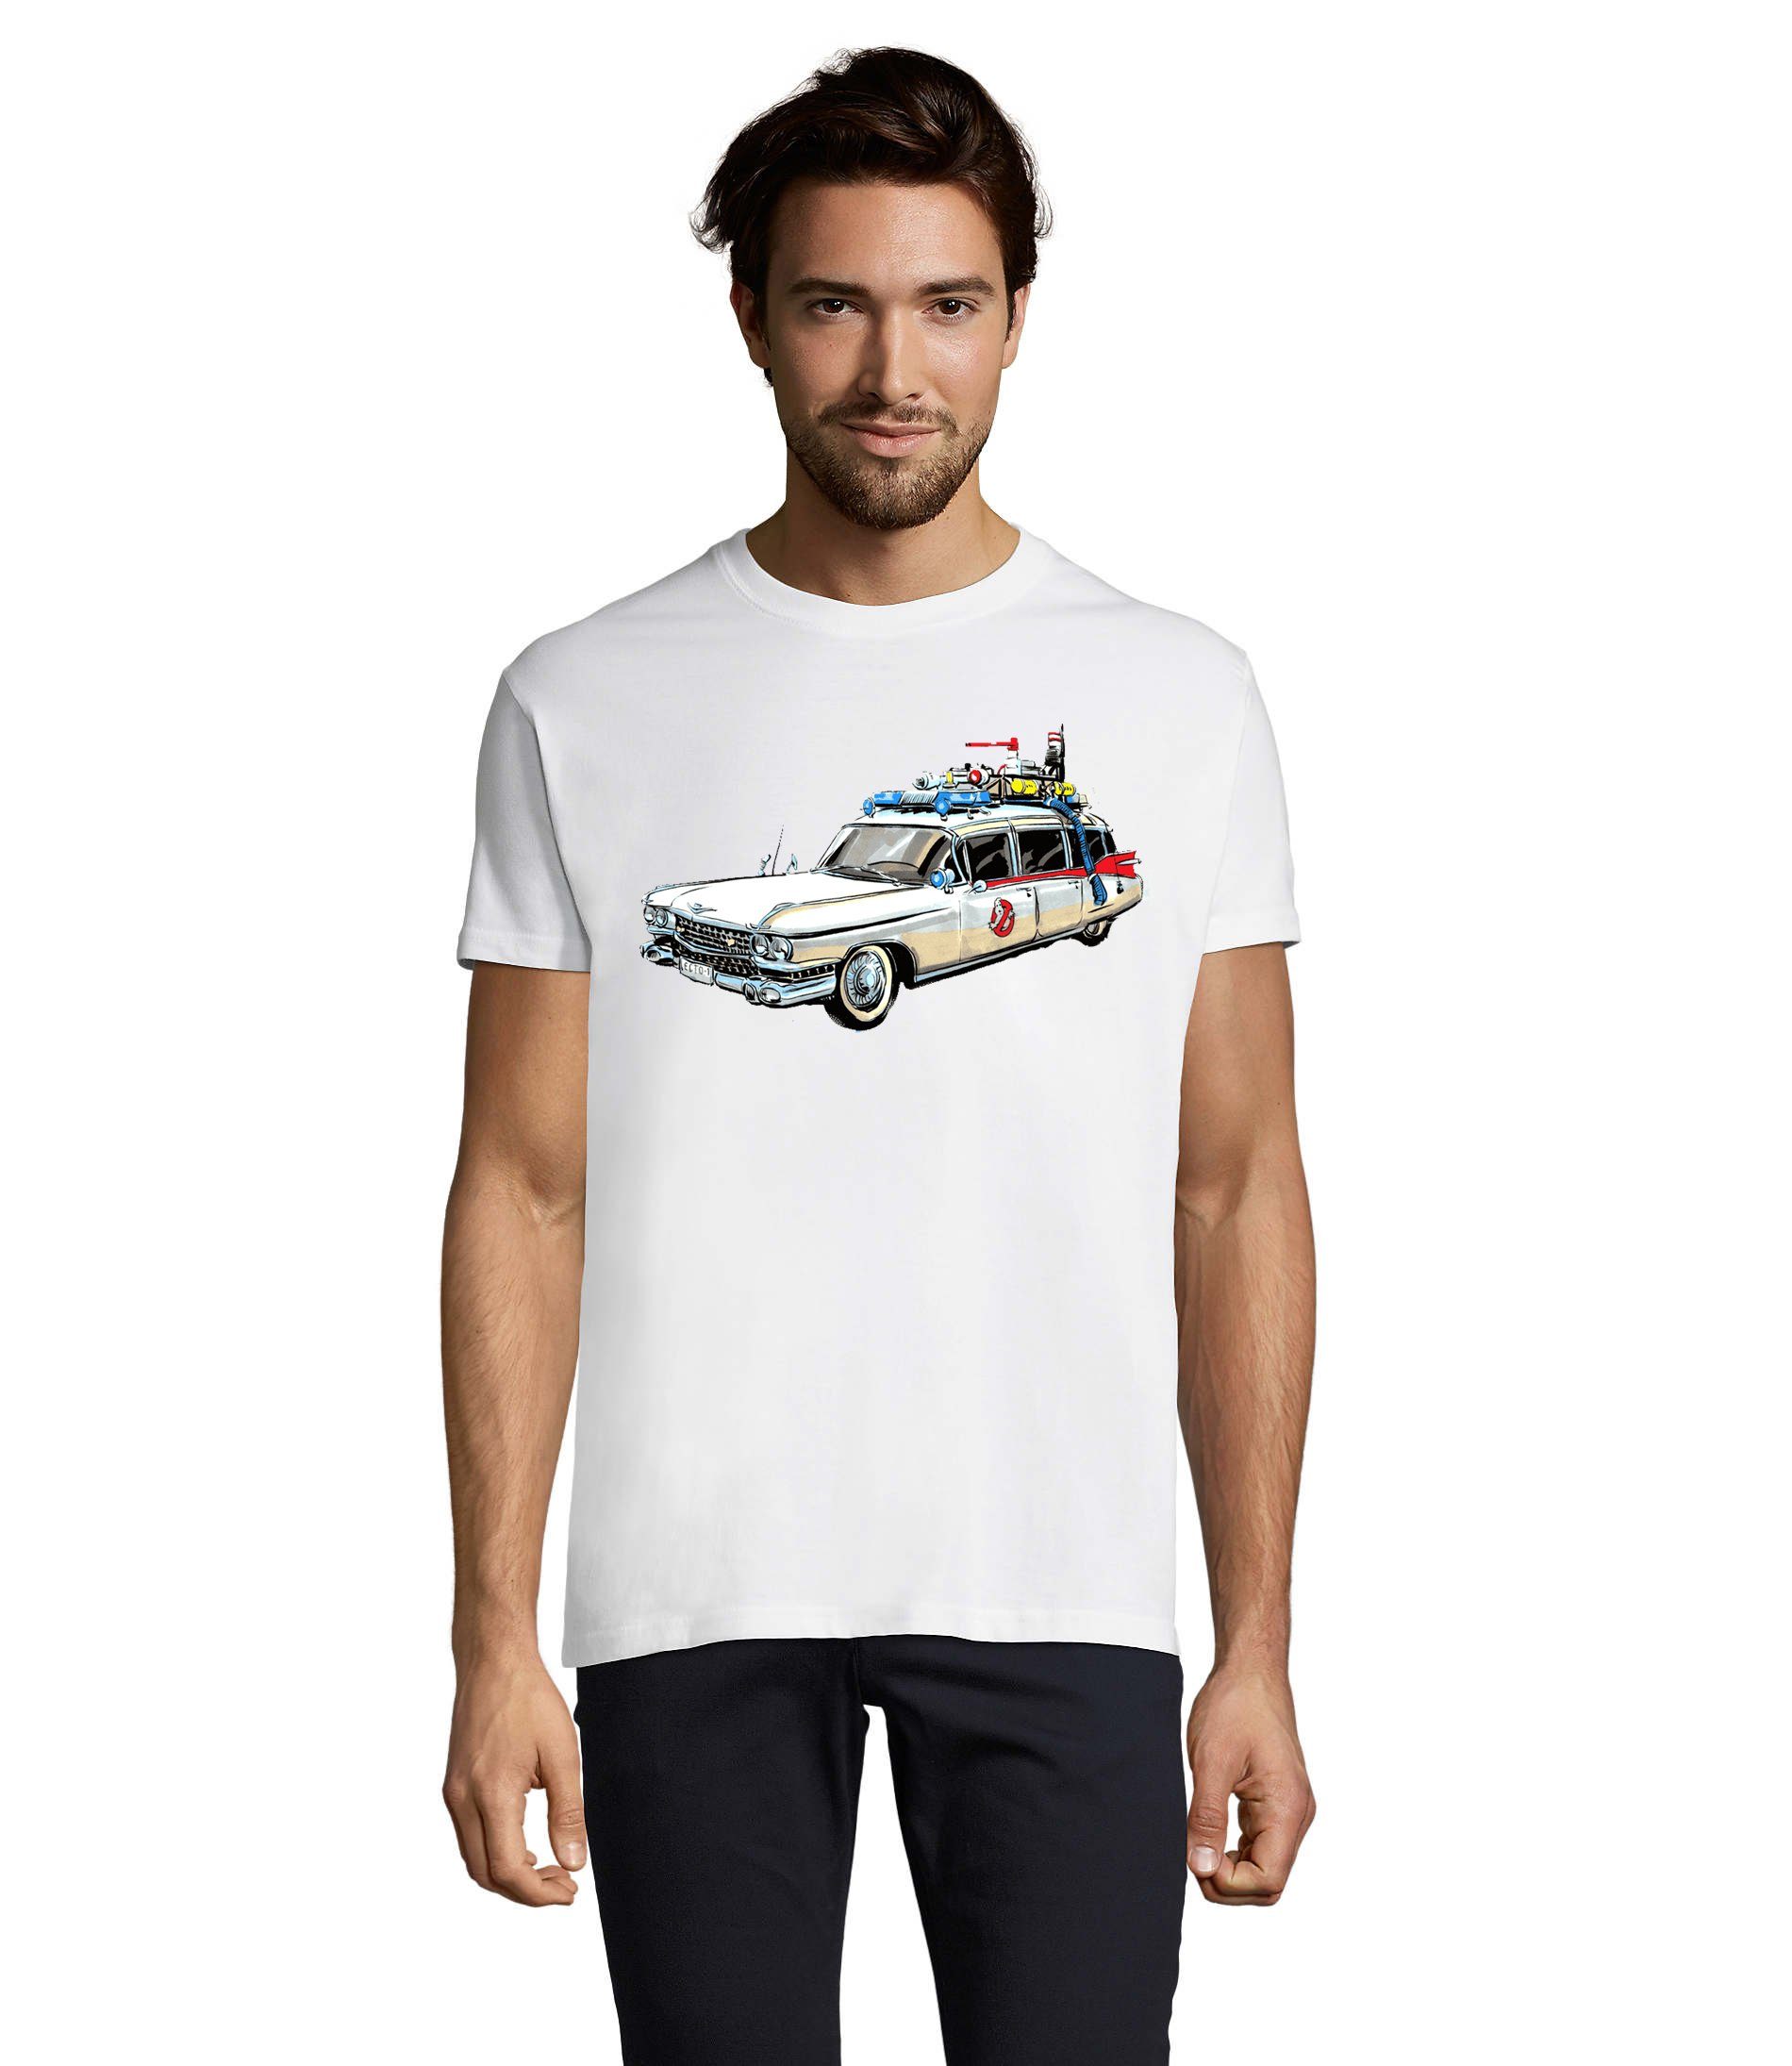 Blondie & Brownie T-Shirt Herren Ghostbusters Cars Auto Geisterjäger Geister Film Ghost Weiß